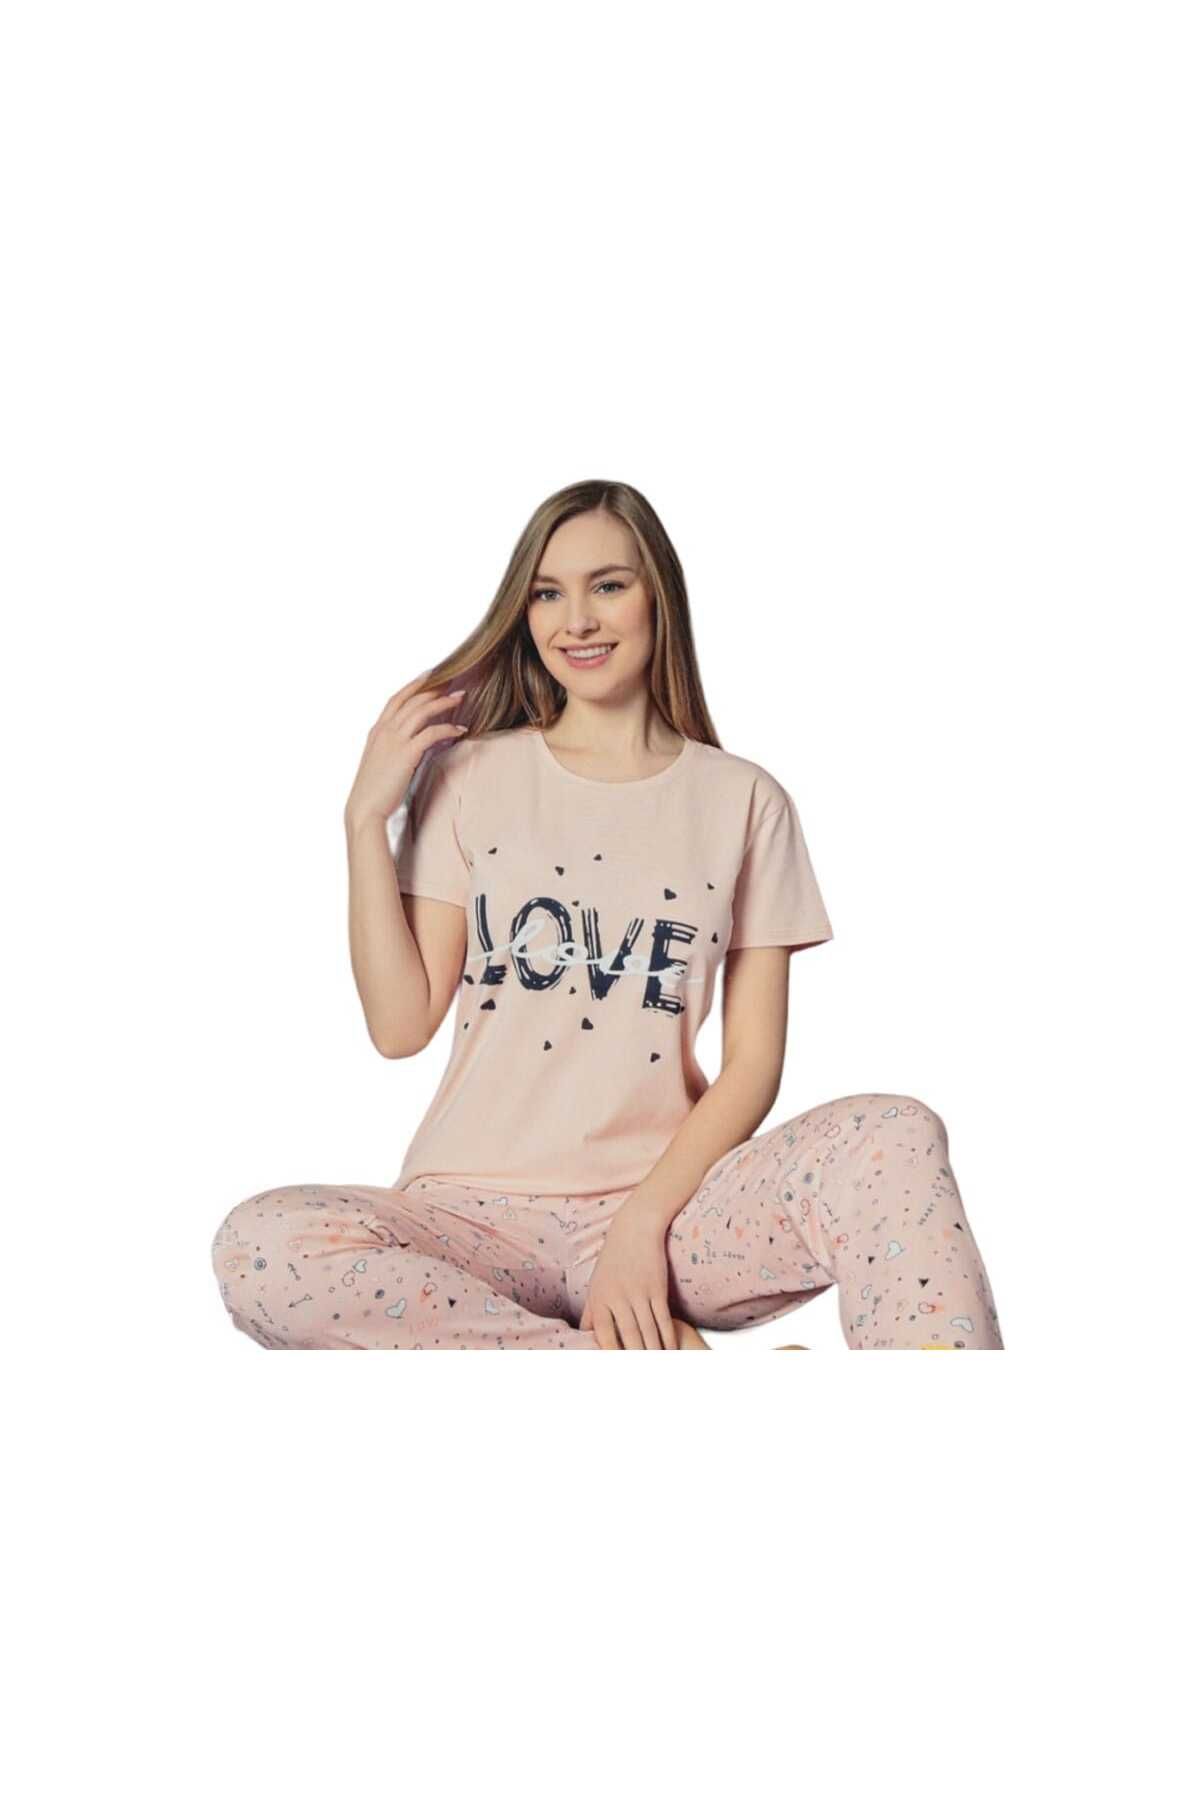 Sude bazaartex love baskılı kısa kol modal  pijama takımı